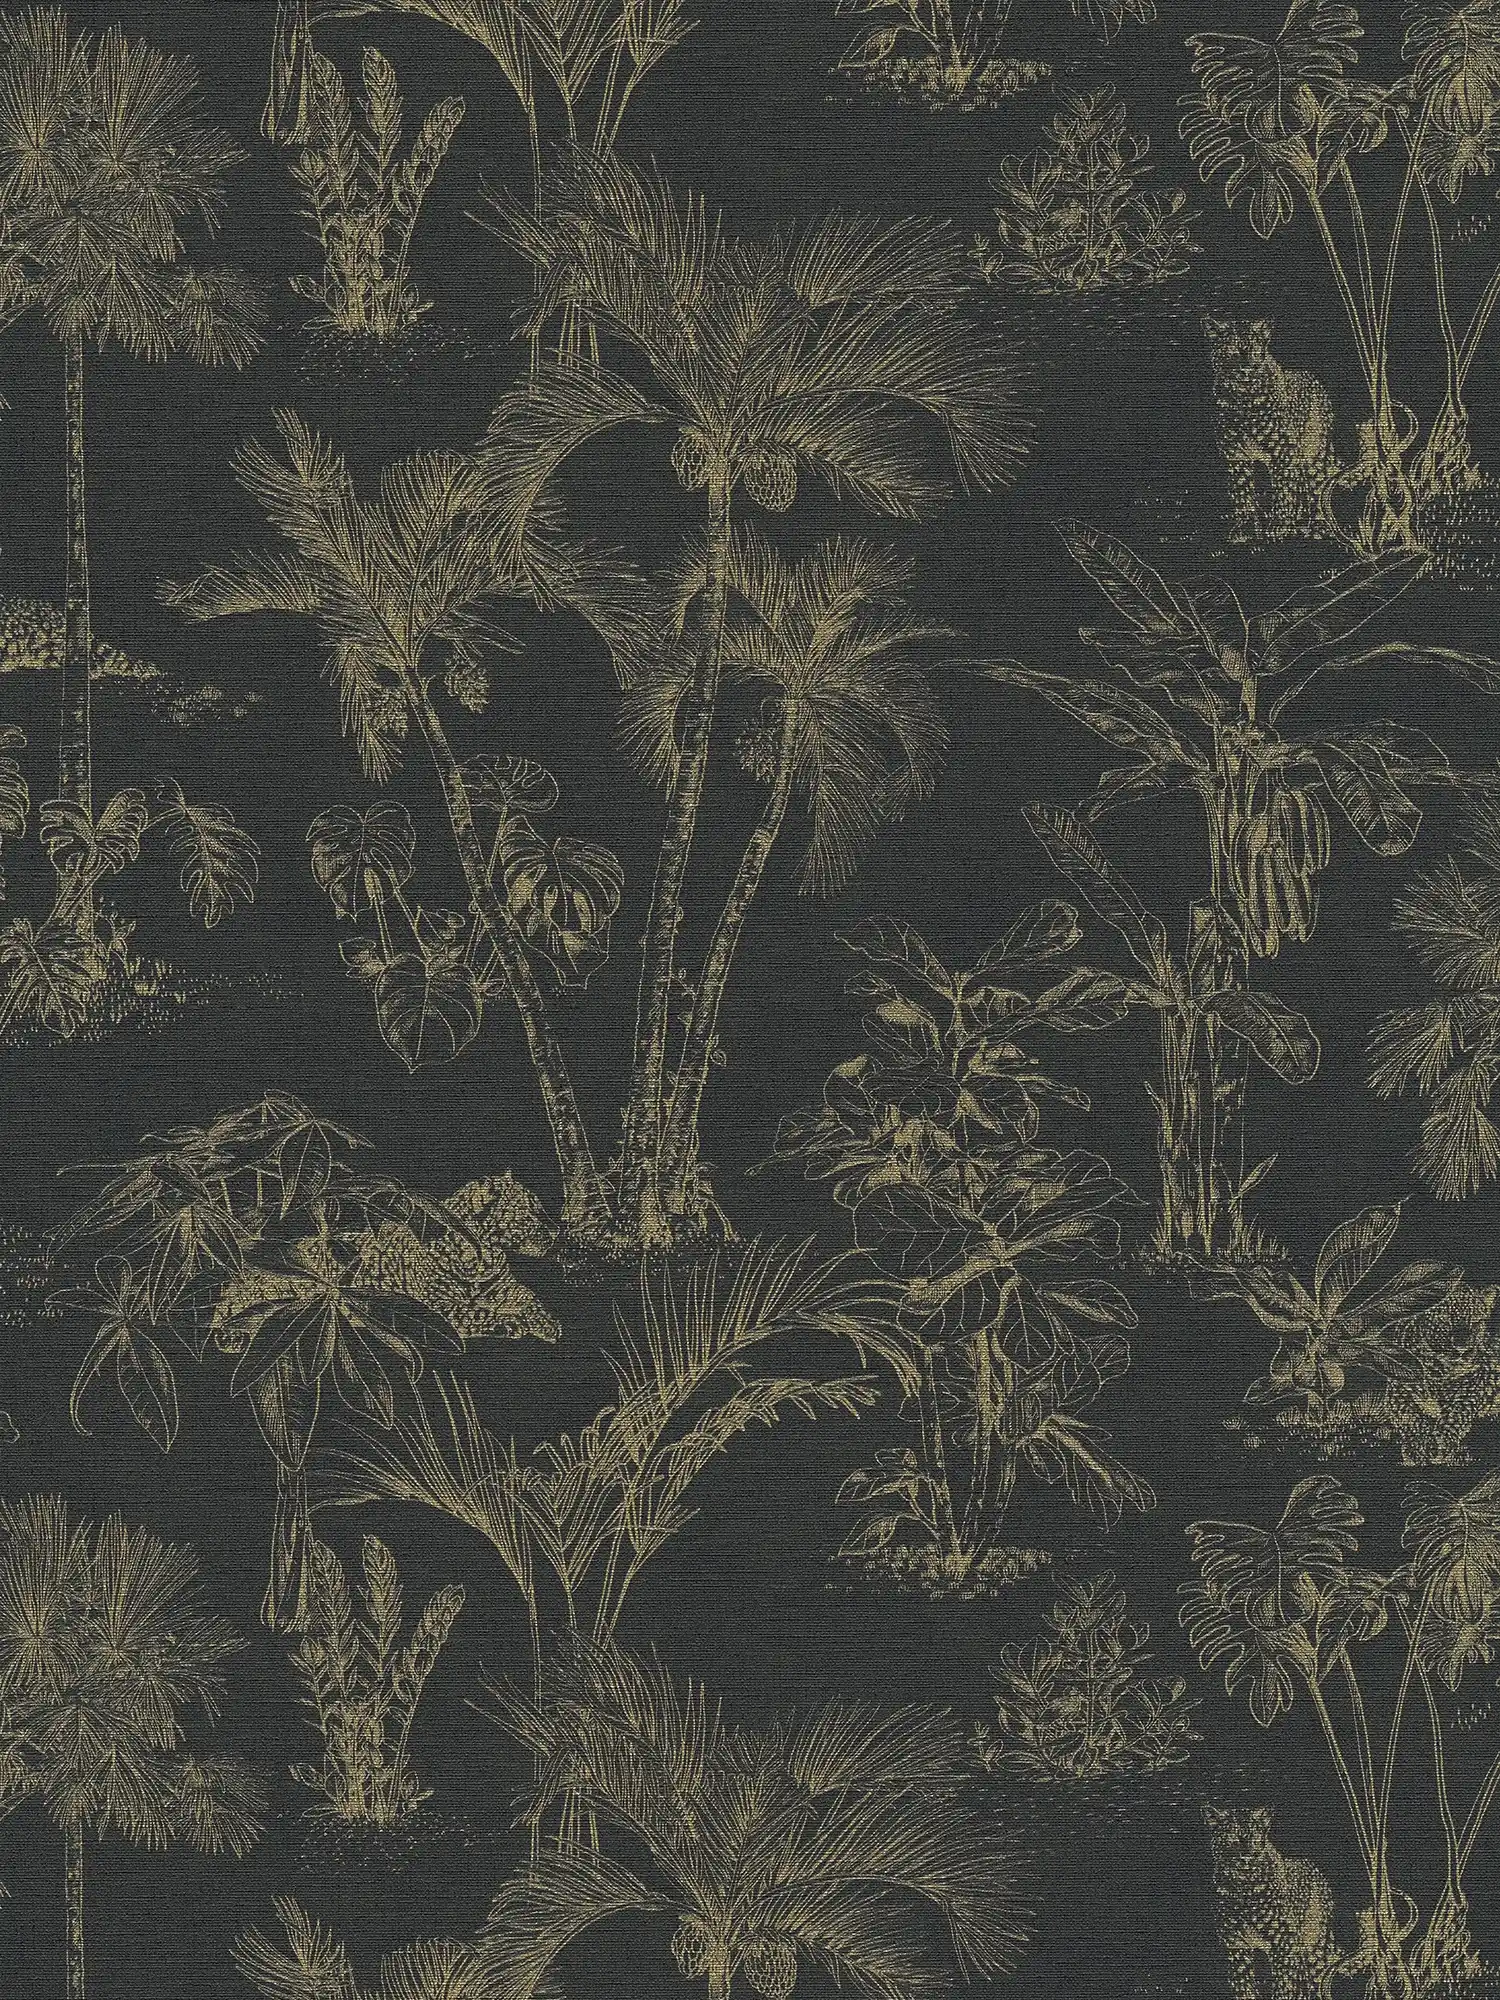         Papier peint jungle avec motif doré - métallique, noir
    